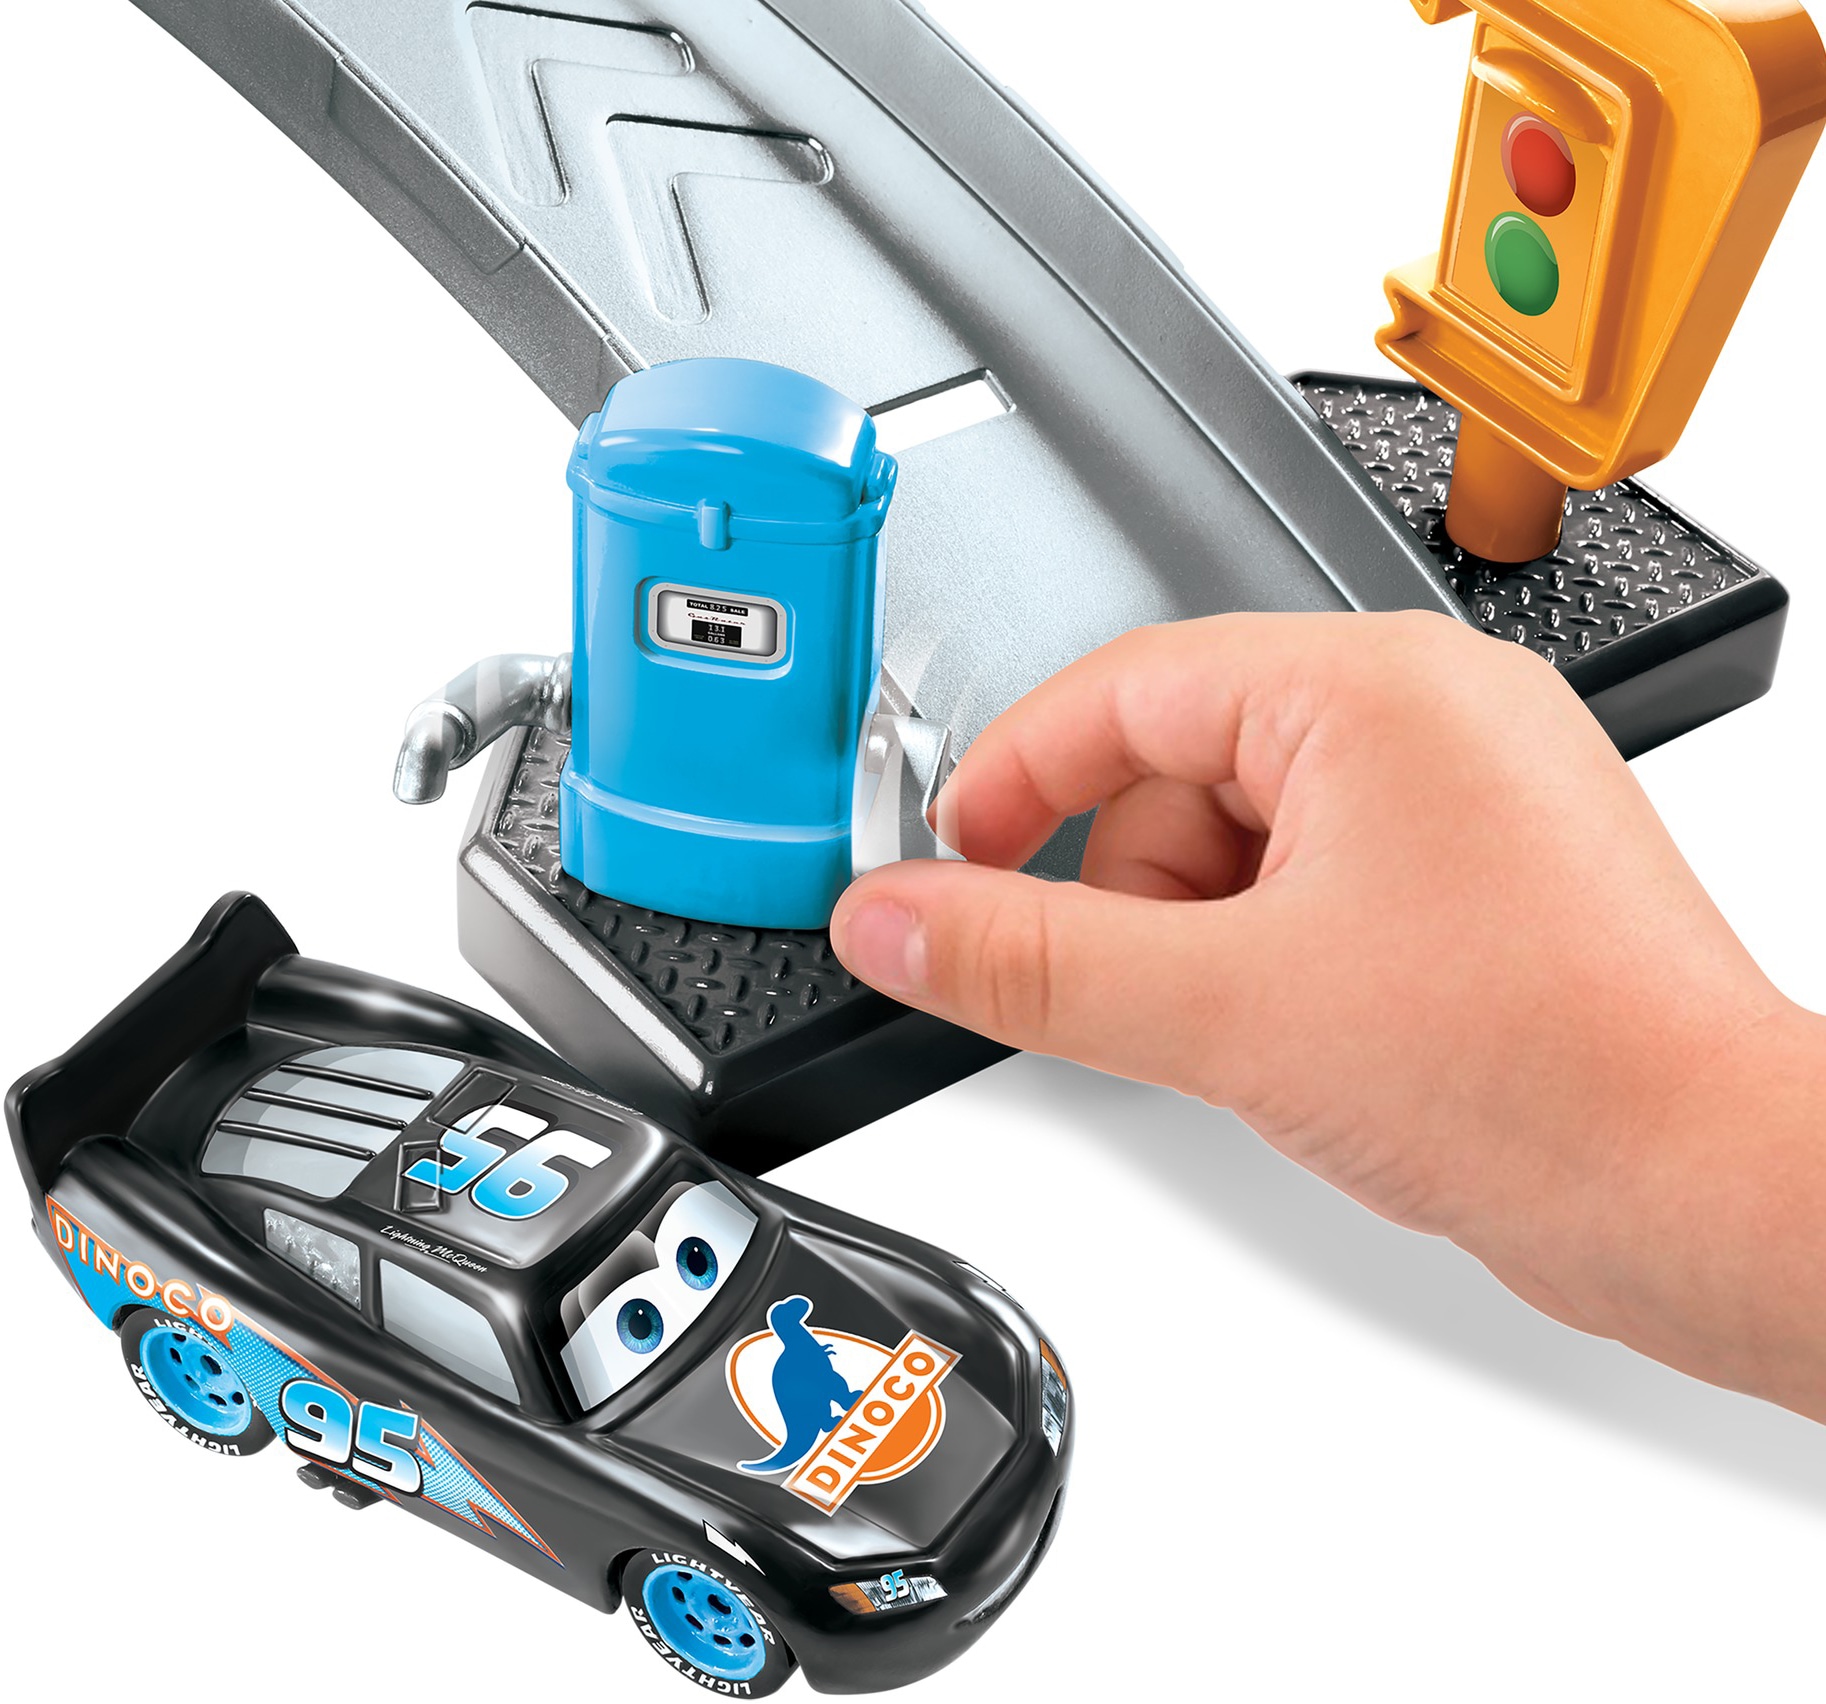 Mattel® Spiel-Gebäude »Disney Pixar Cars, Farbwechsel Dinoco Autowaschanlage«, inkl. Fahrzeug mit Farbwechseleffekt